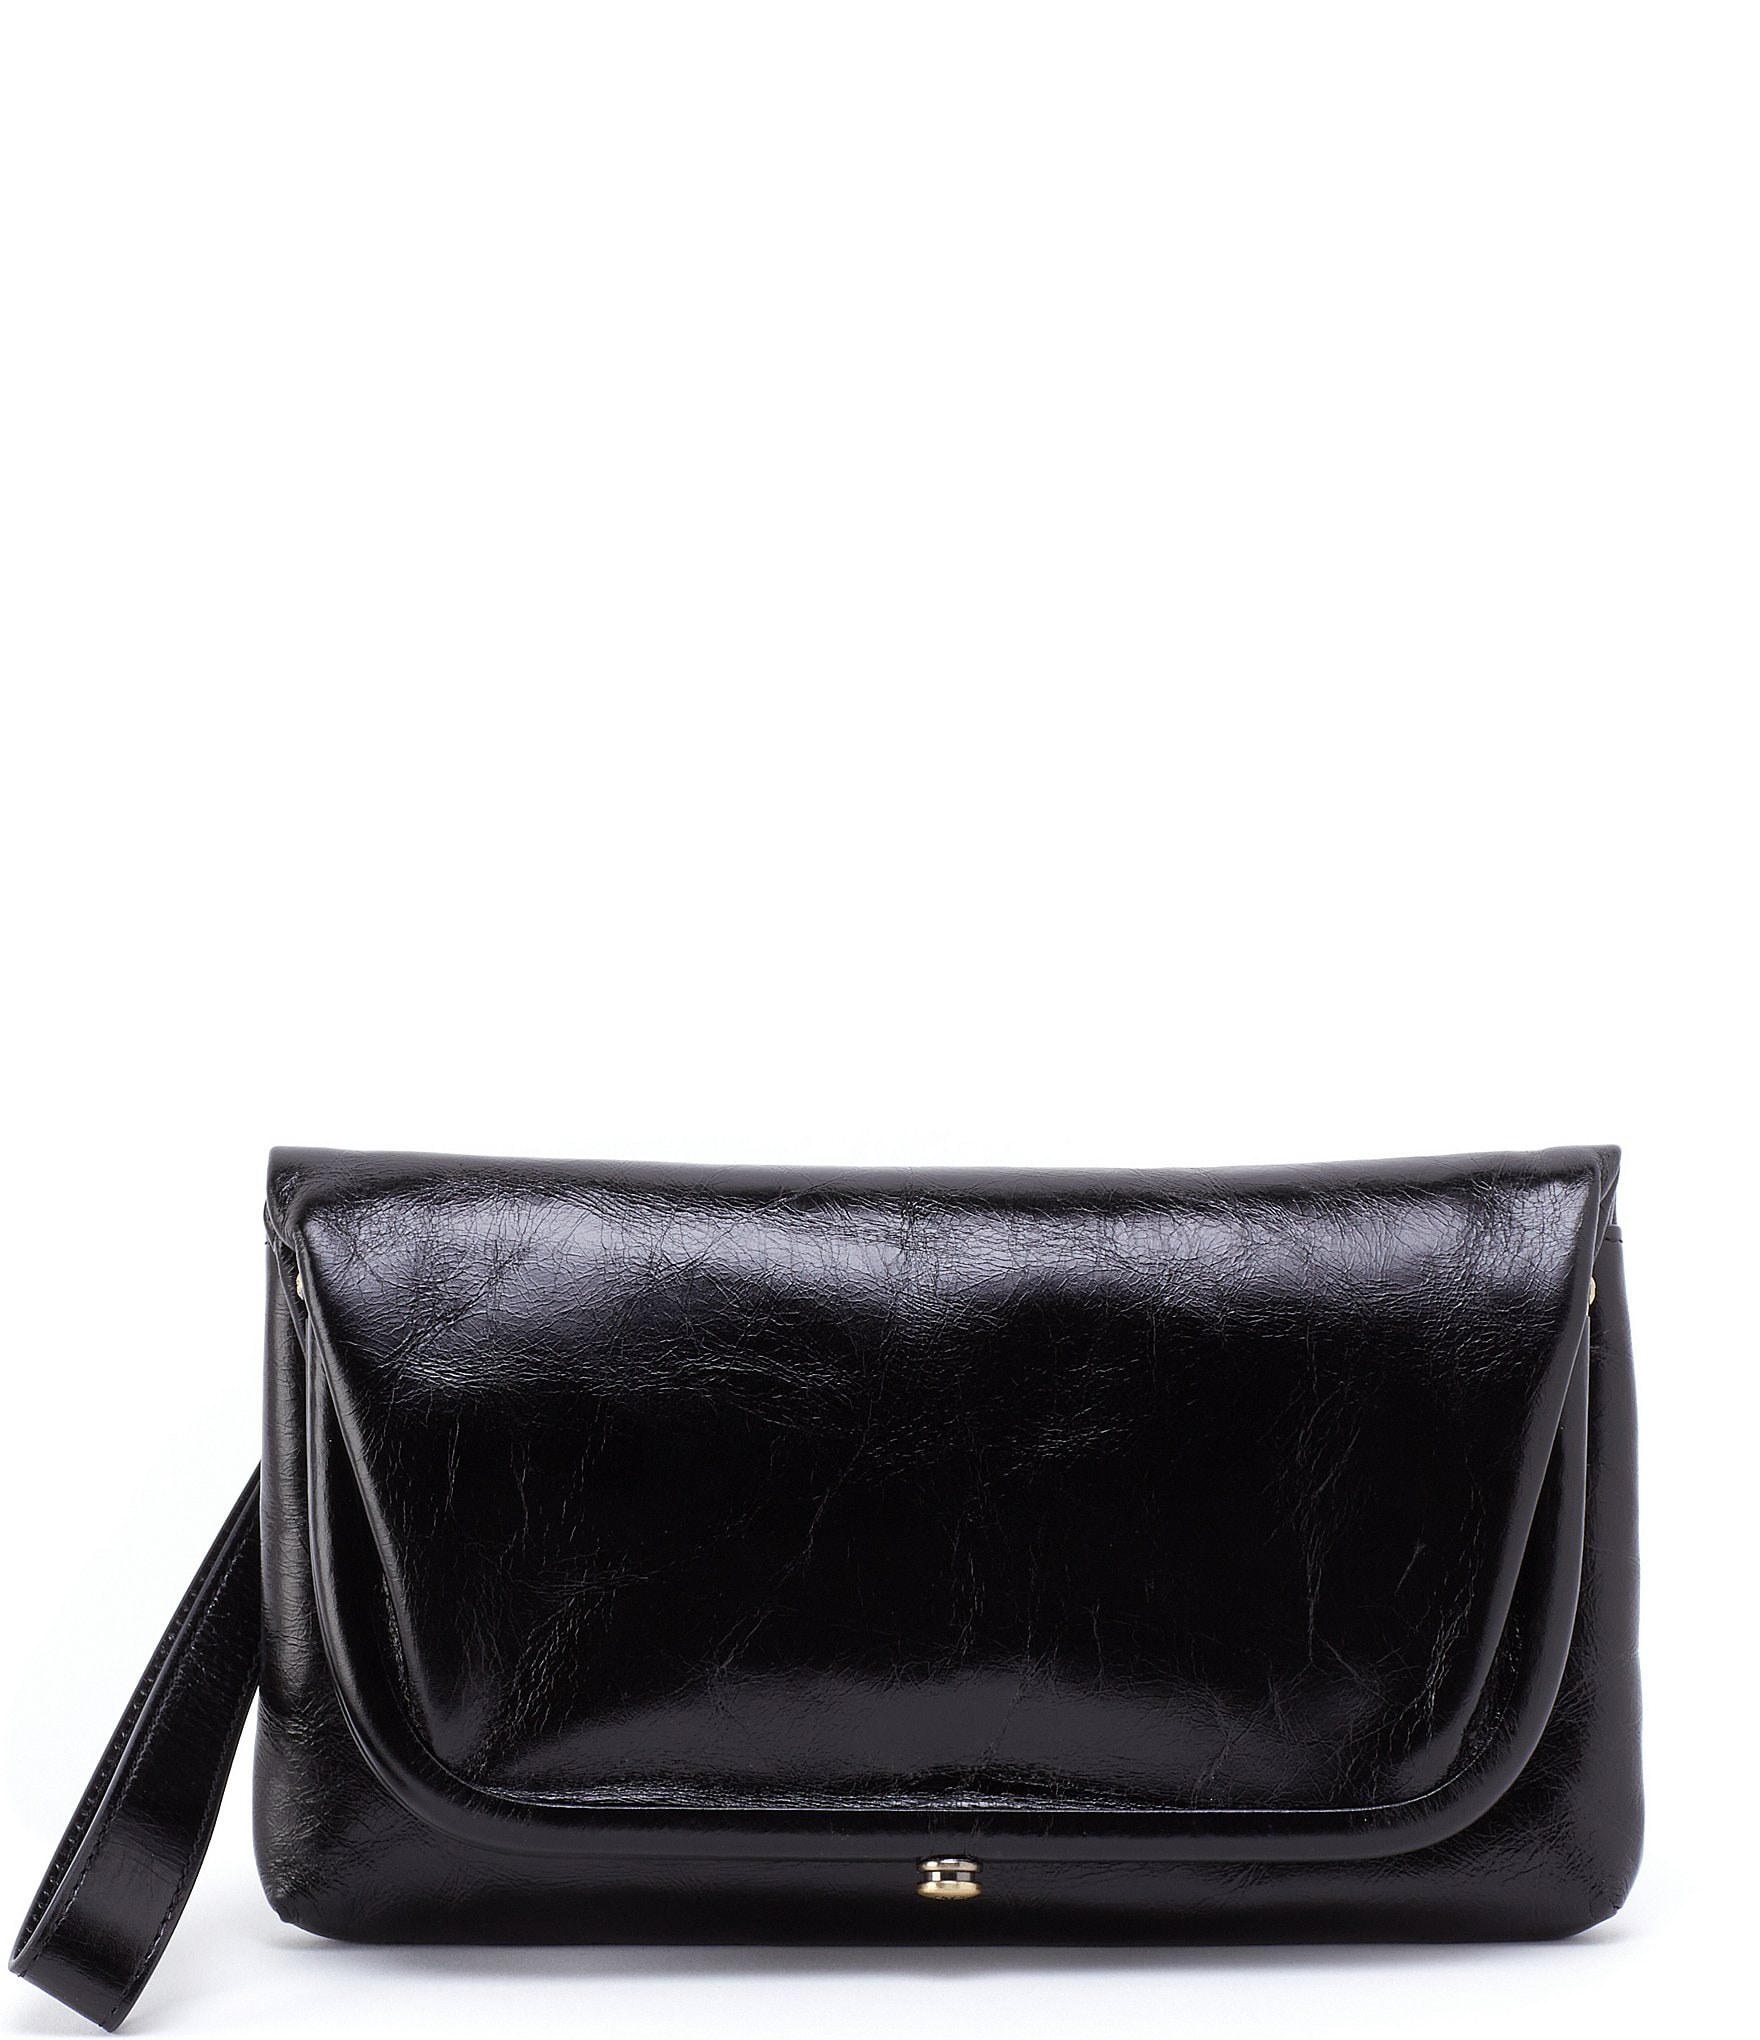 Vintage Dillards Black Leather Shoulder Bag Purse